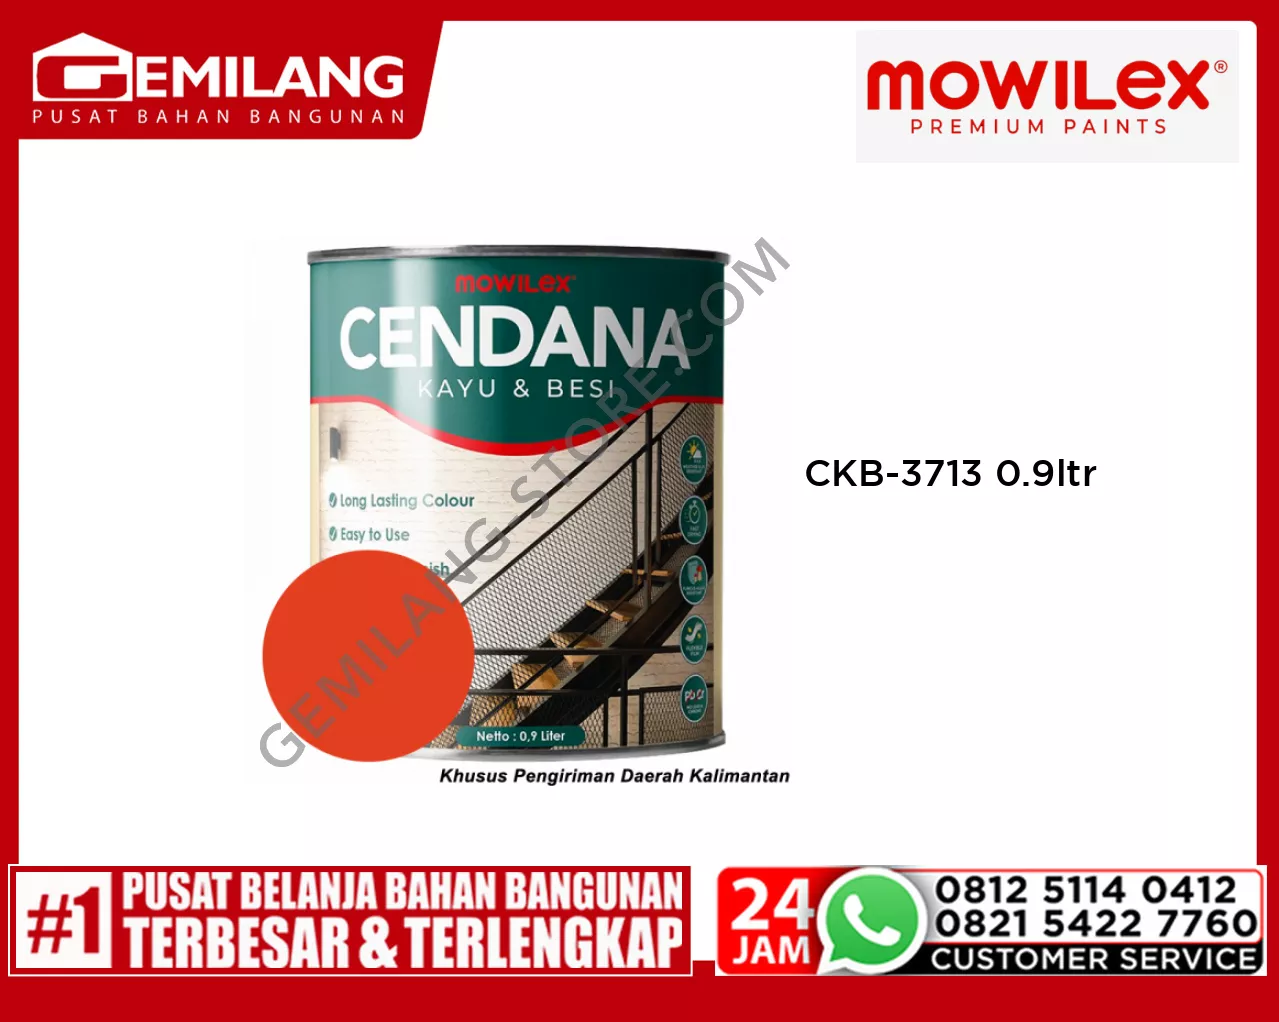 MOWILEX CENDANA KAYU & BESI CKB-3713 BELL PEPPER 0.9ltr